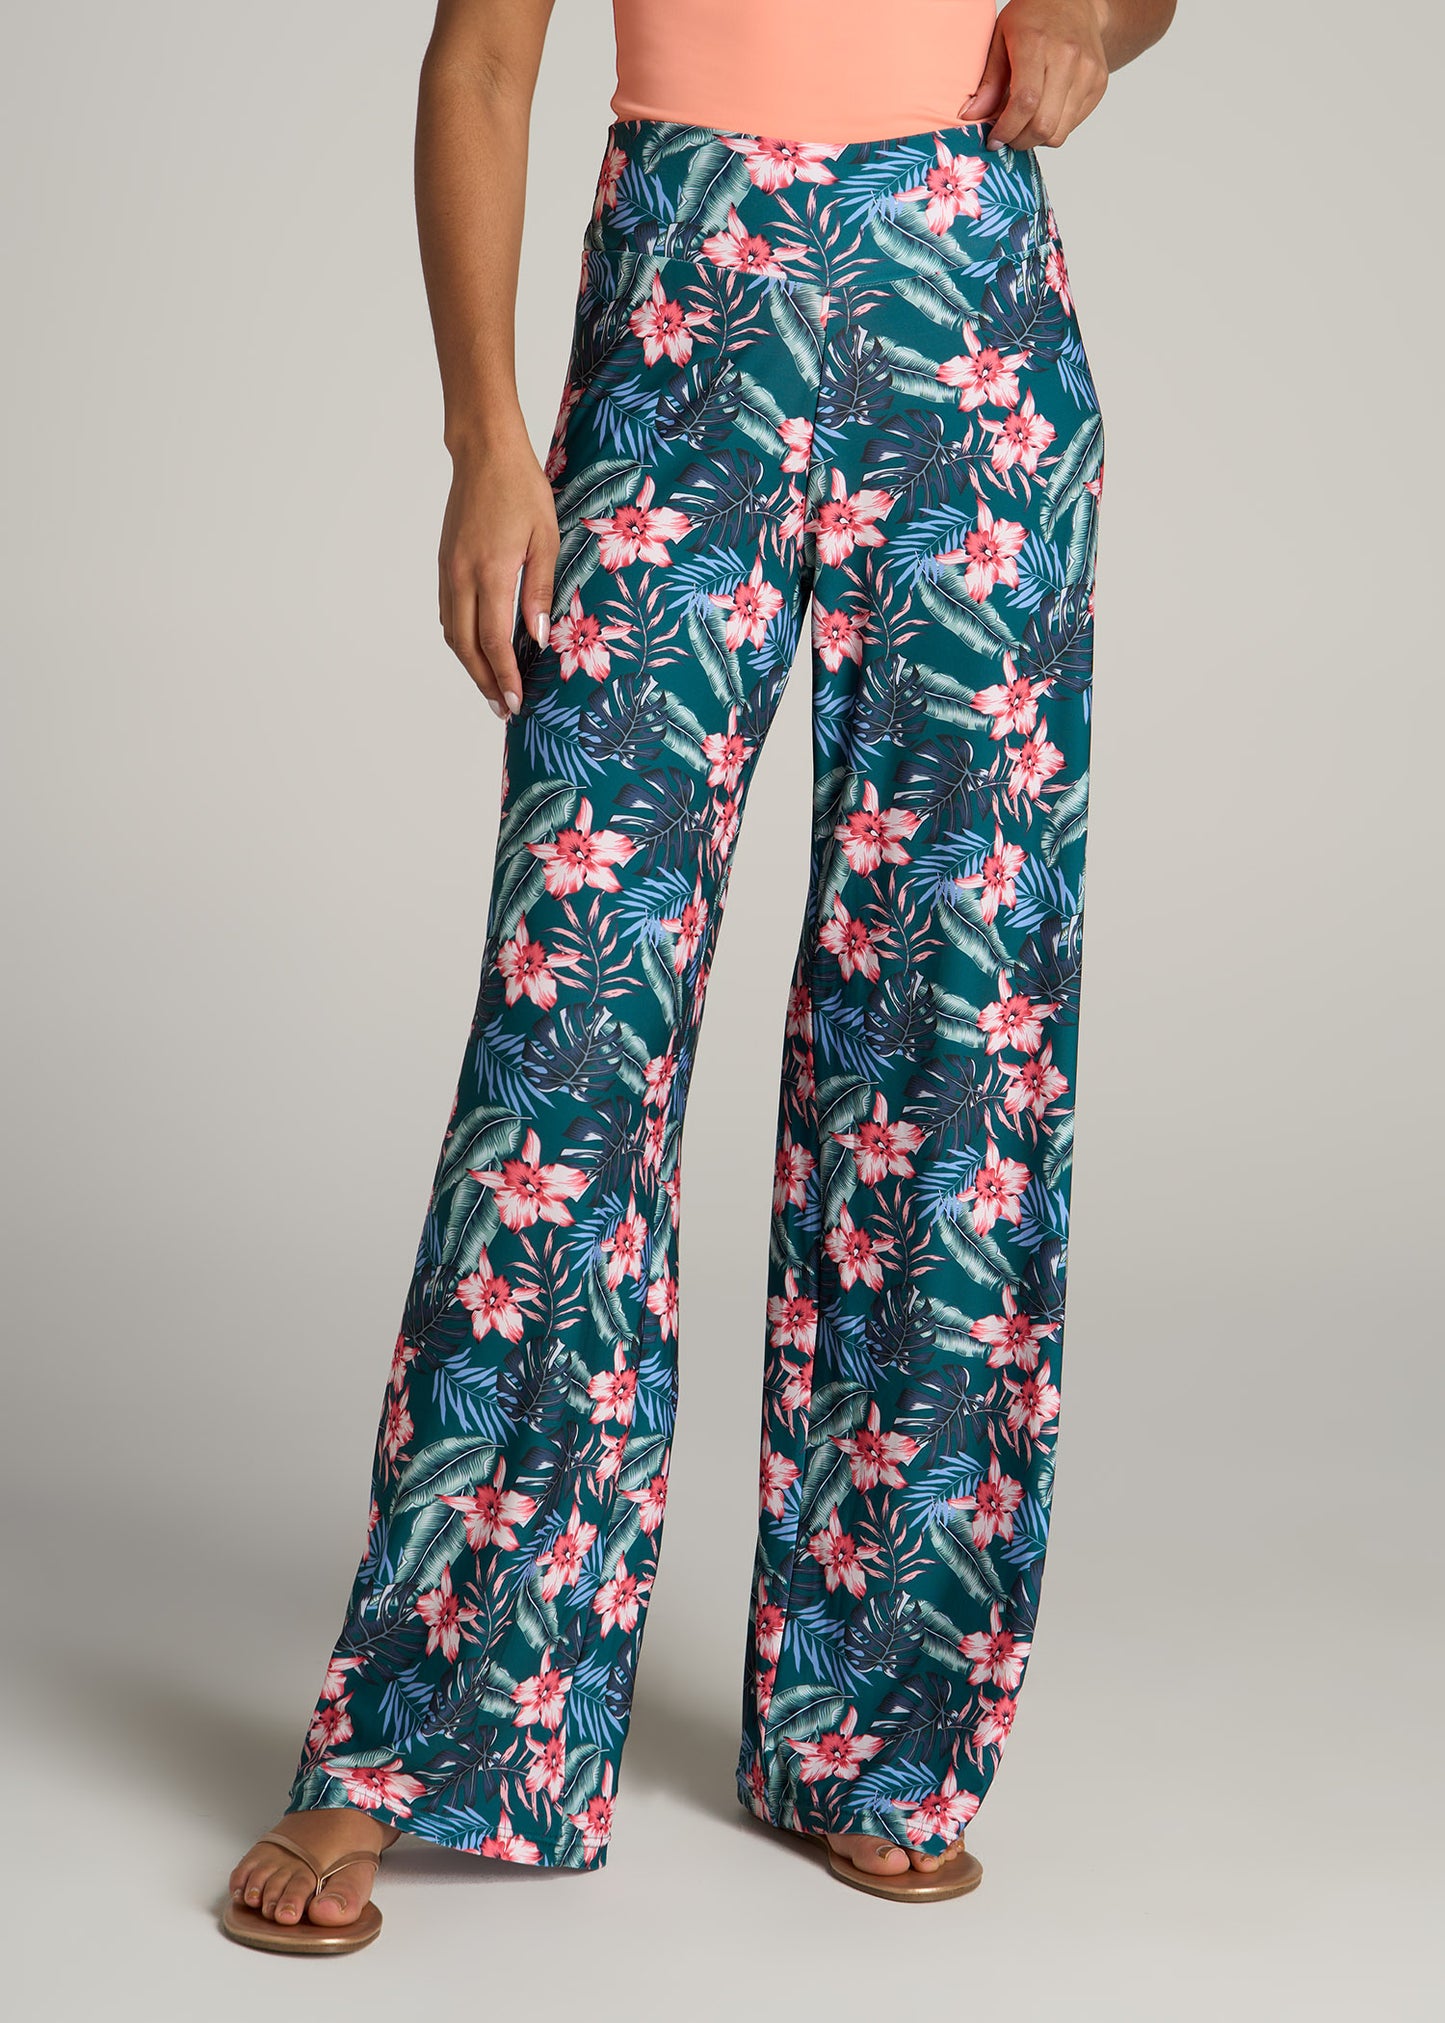 Buy Vero Moda Multicolor Floral Print Trousers for Women Online @ Tata CLiQ